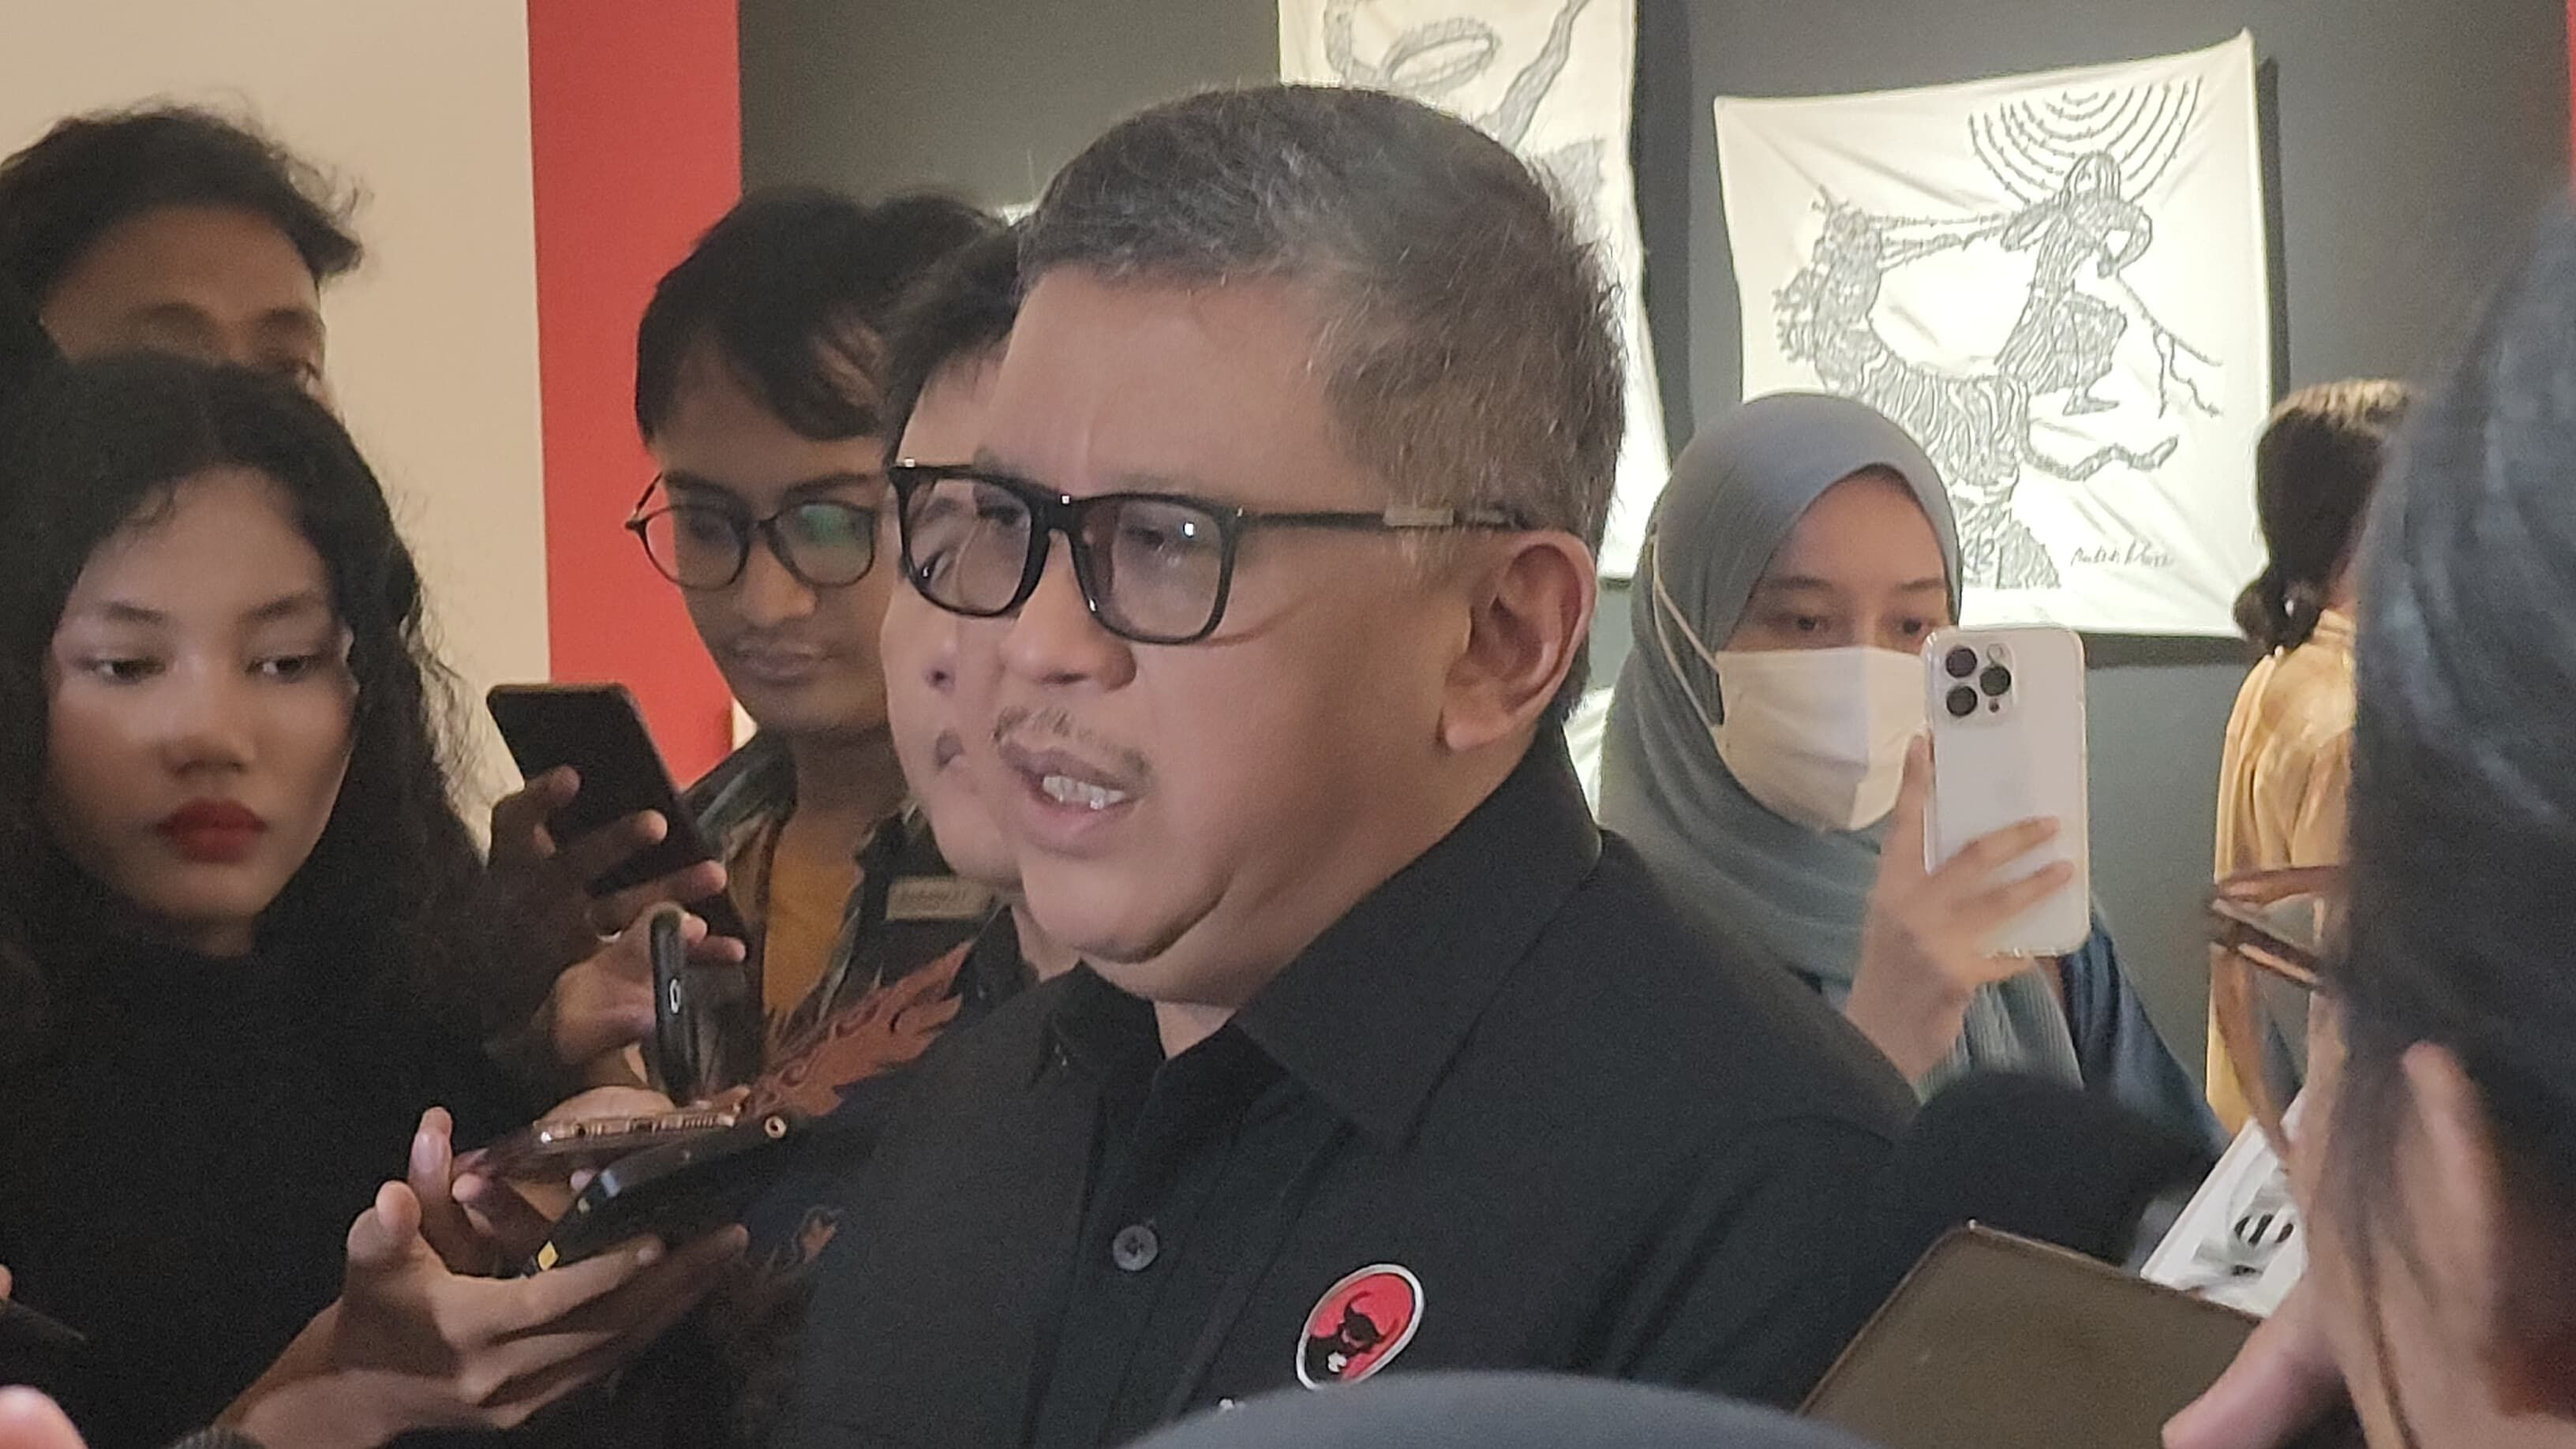 Sebut Ada 8 Nama untuk Pilkada Jakarta, Sekjen PDI-P: Sudah di Kantongnya Megawati